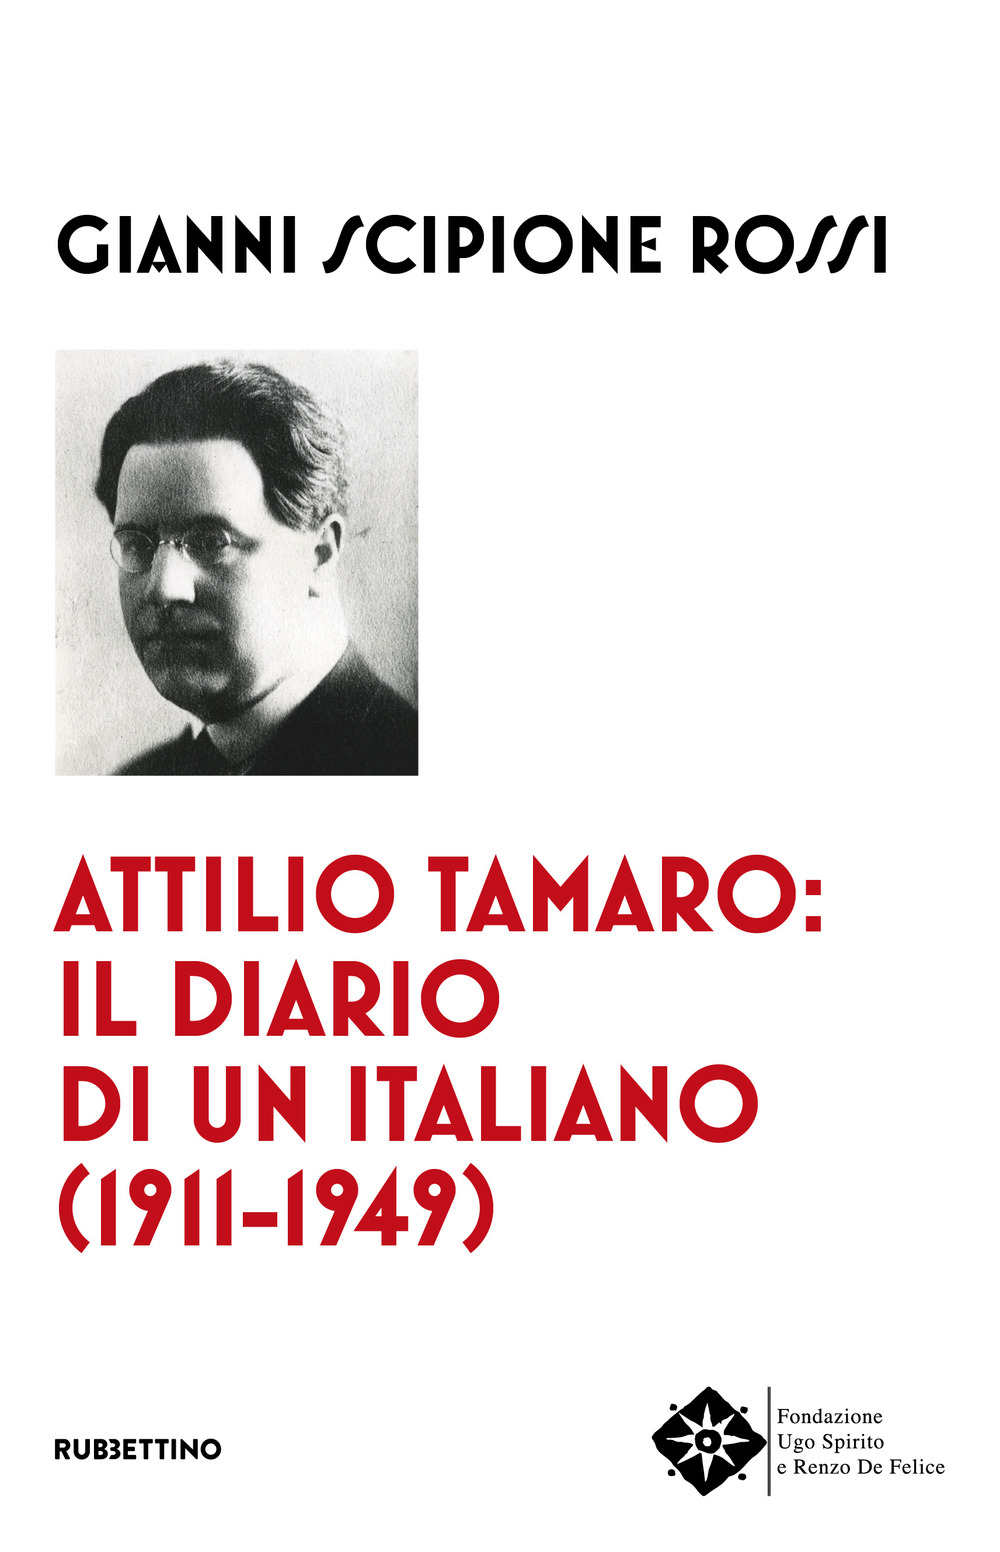 Attilio Tamaro: il diario di un italiano (1911-1949)